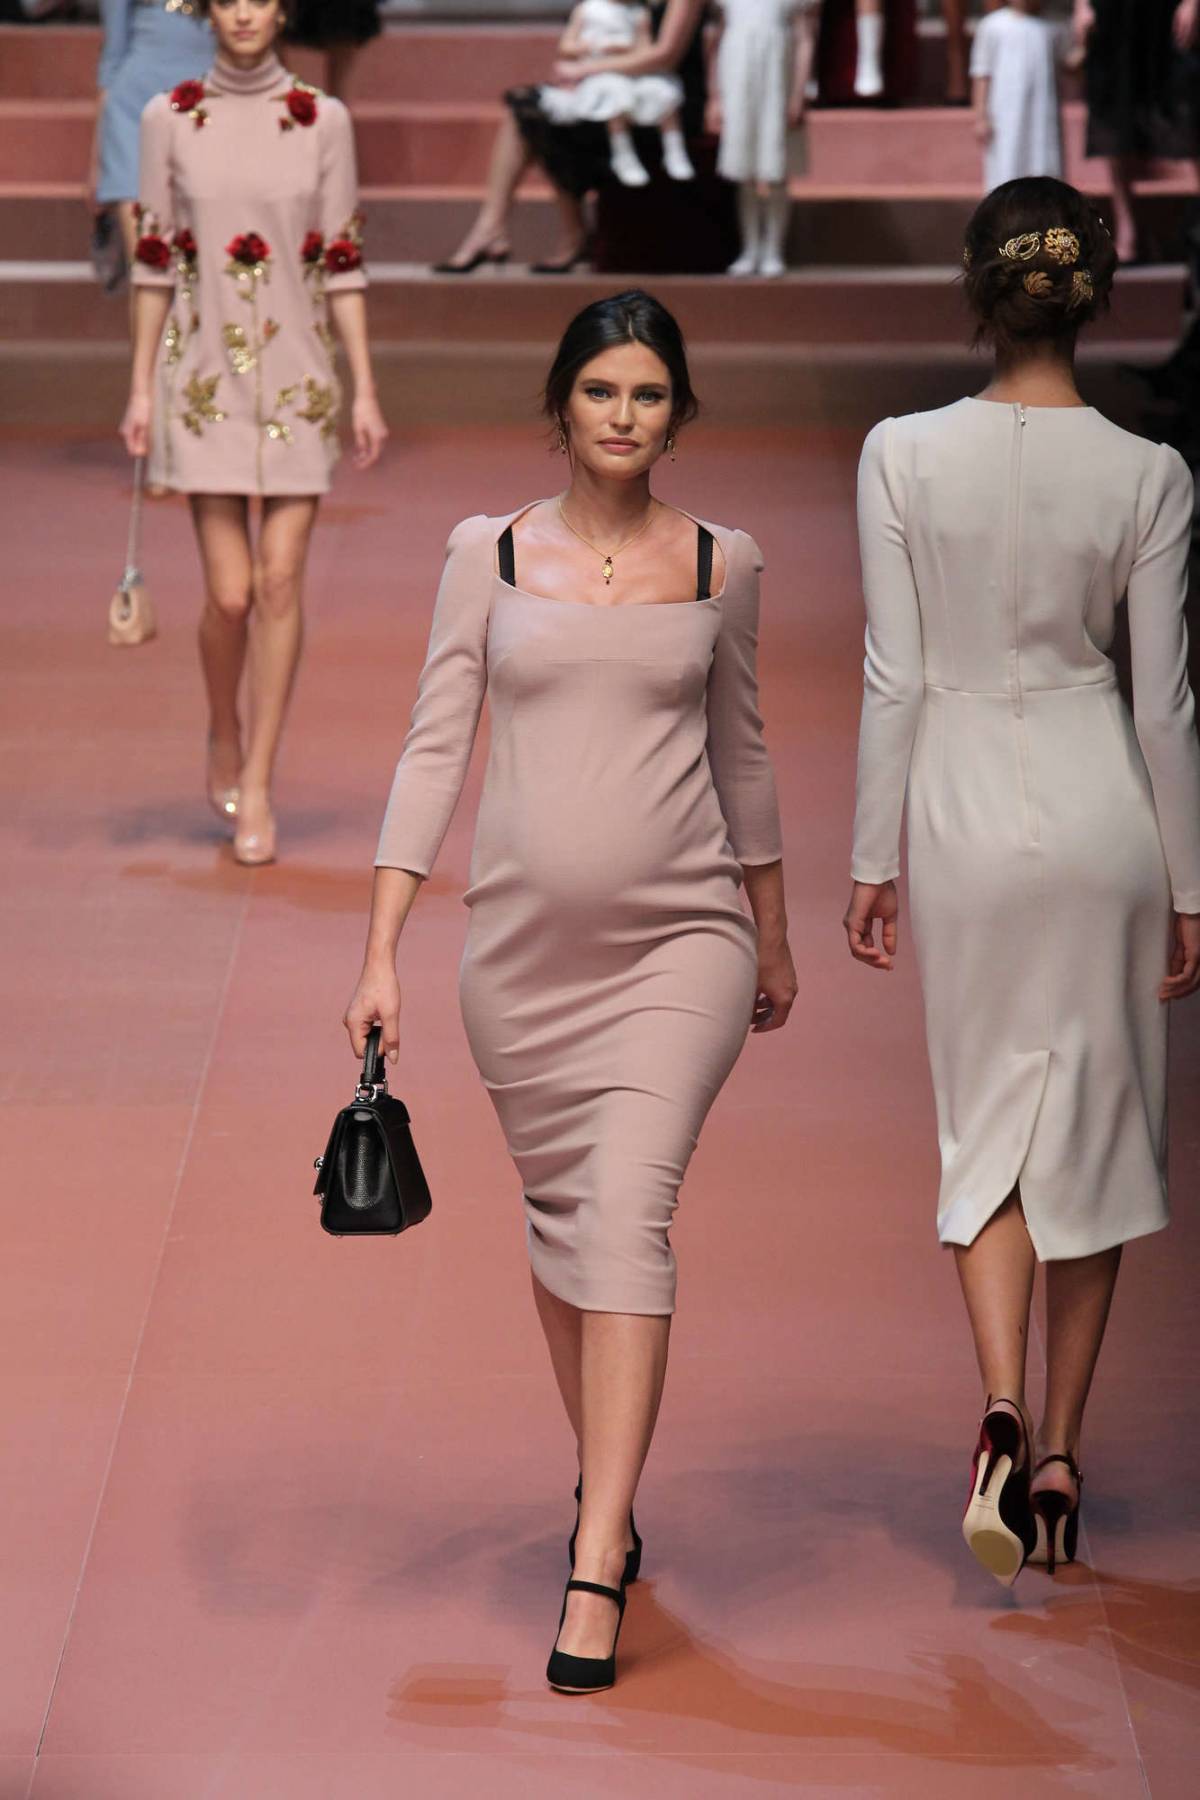 L'amore secondo Dolce & Gabbana: la Balti sfila al 6° mese di gravidanza